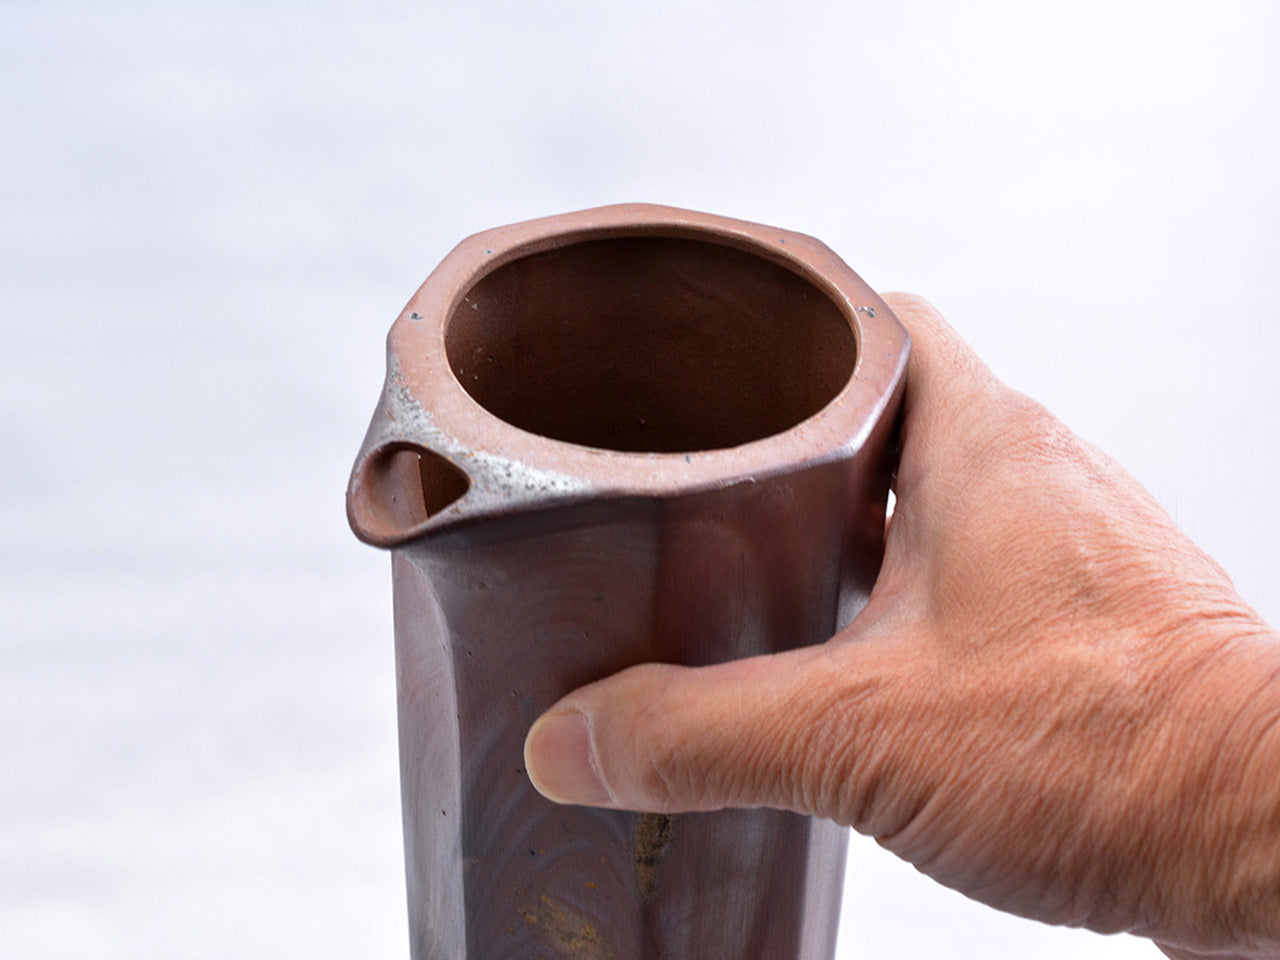 餐桌小物 水瓶 斜面圓筒狀水瓶 五郎邊衛窯 備前燒 陶瓷器